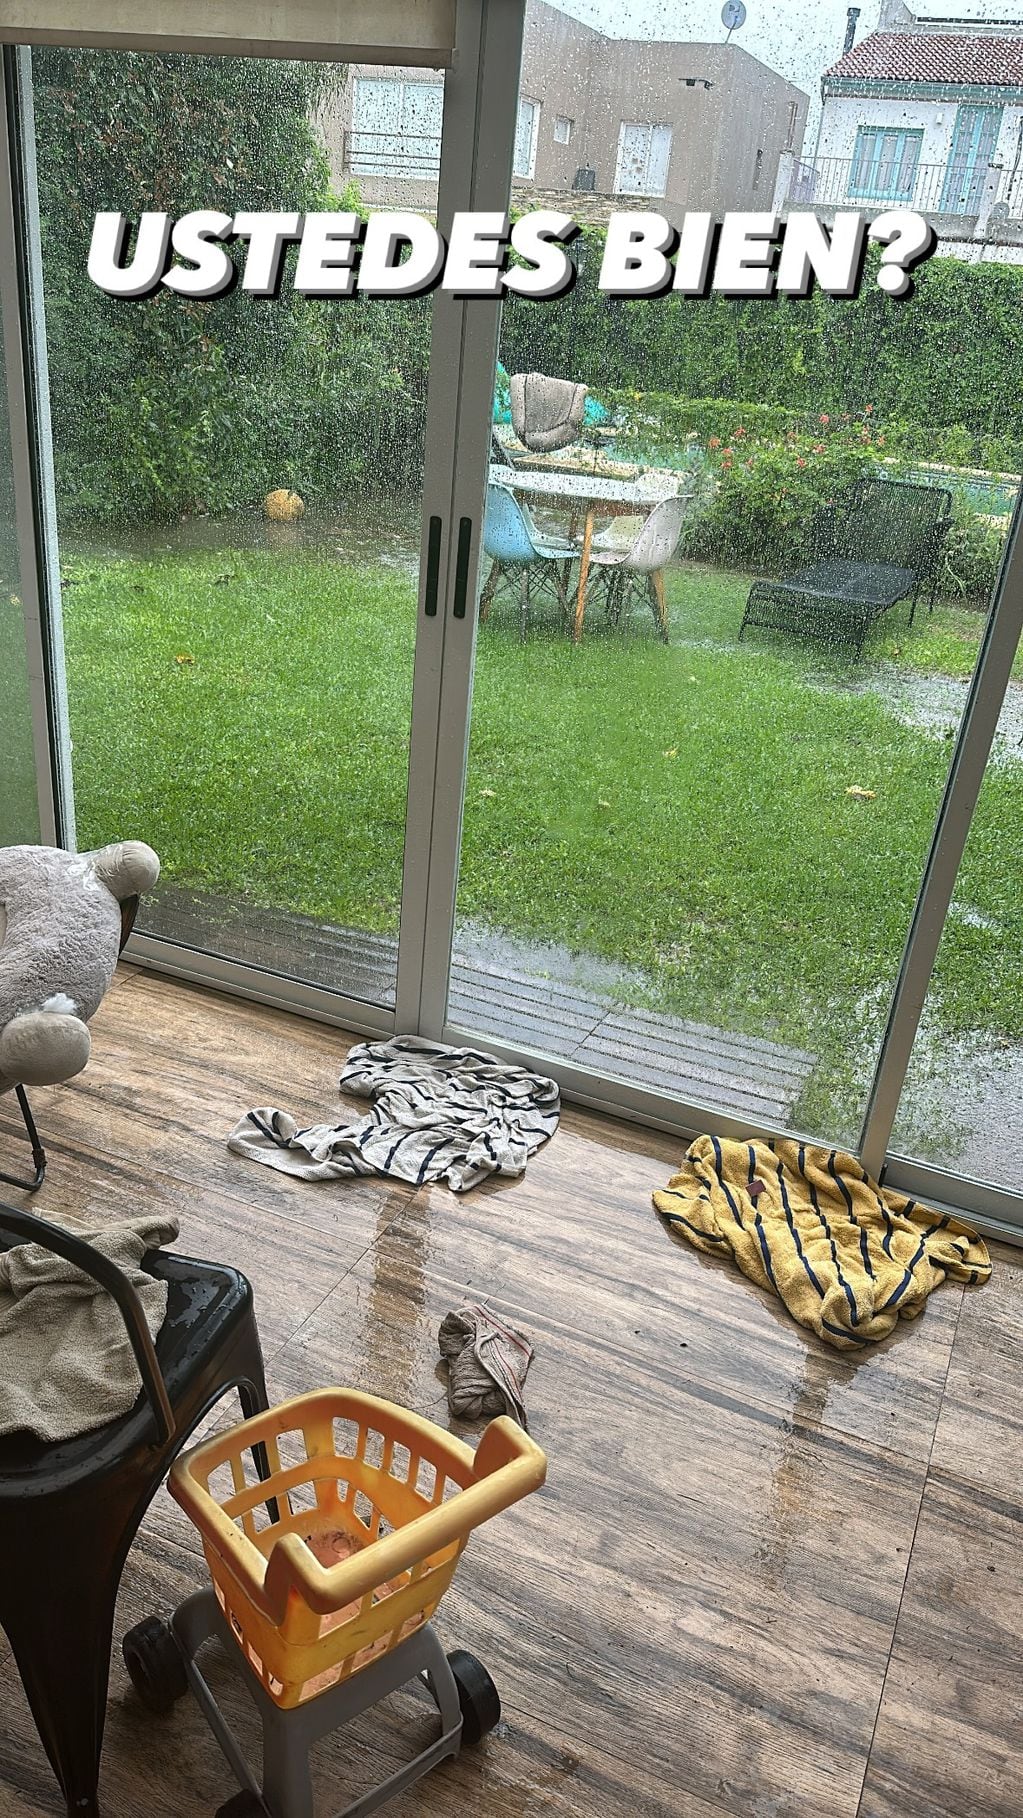 Juana Repetto mostró su casa tras el temporal. / Instagram